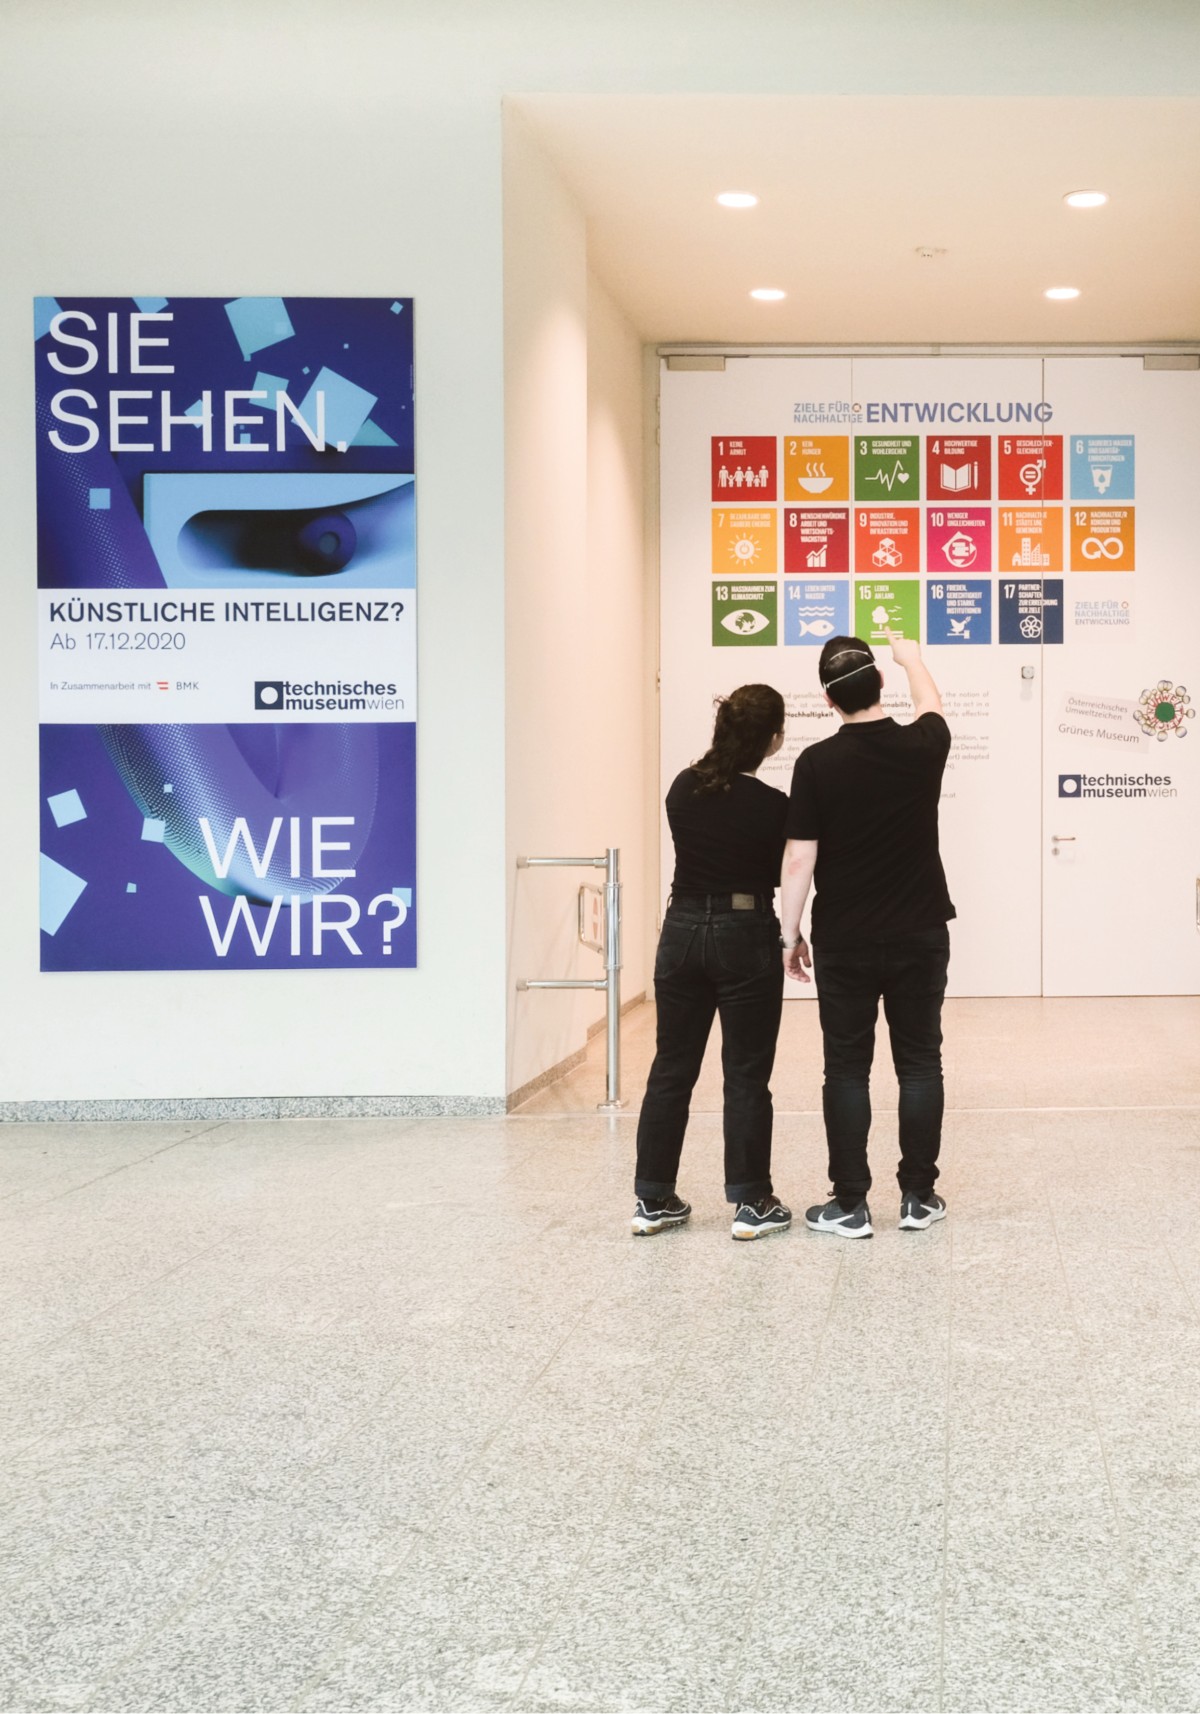 Das Technische Museum Wien hat die 17 Nachhaltigkeitsziele der Vereinten (Sustainable Development Goals) in sein Leitbild übernommen und zeigt dies in der Eingangshalle